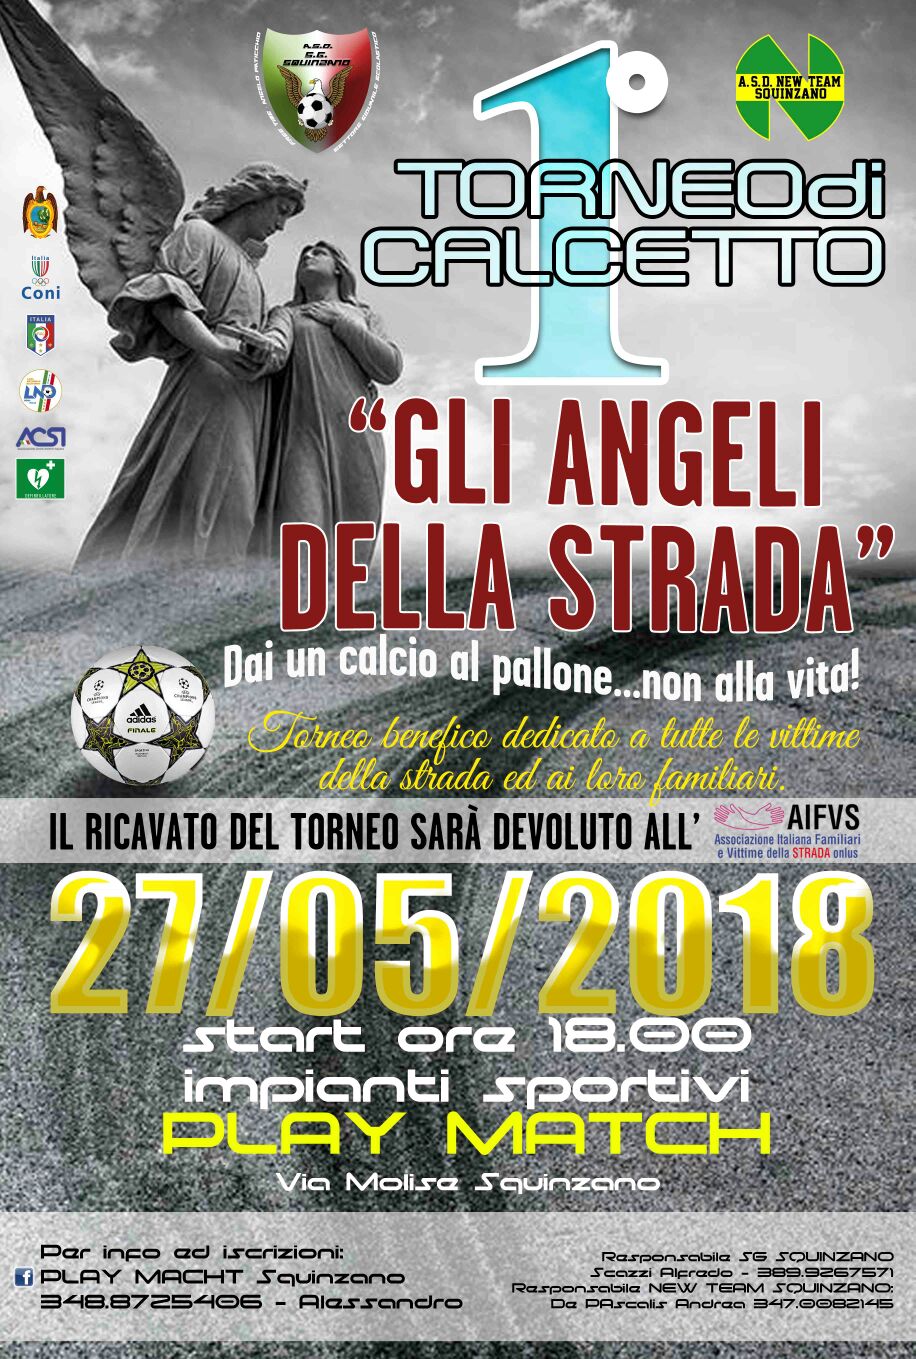 TorneoCarcettoFraticelliMaggio2018.jpg